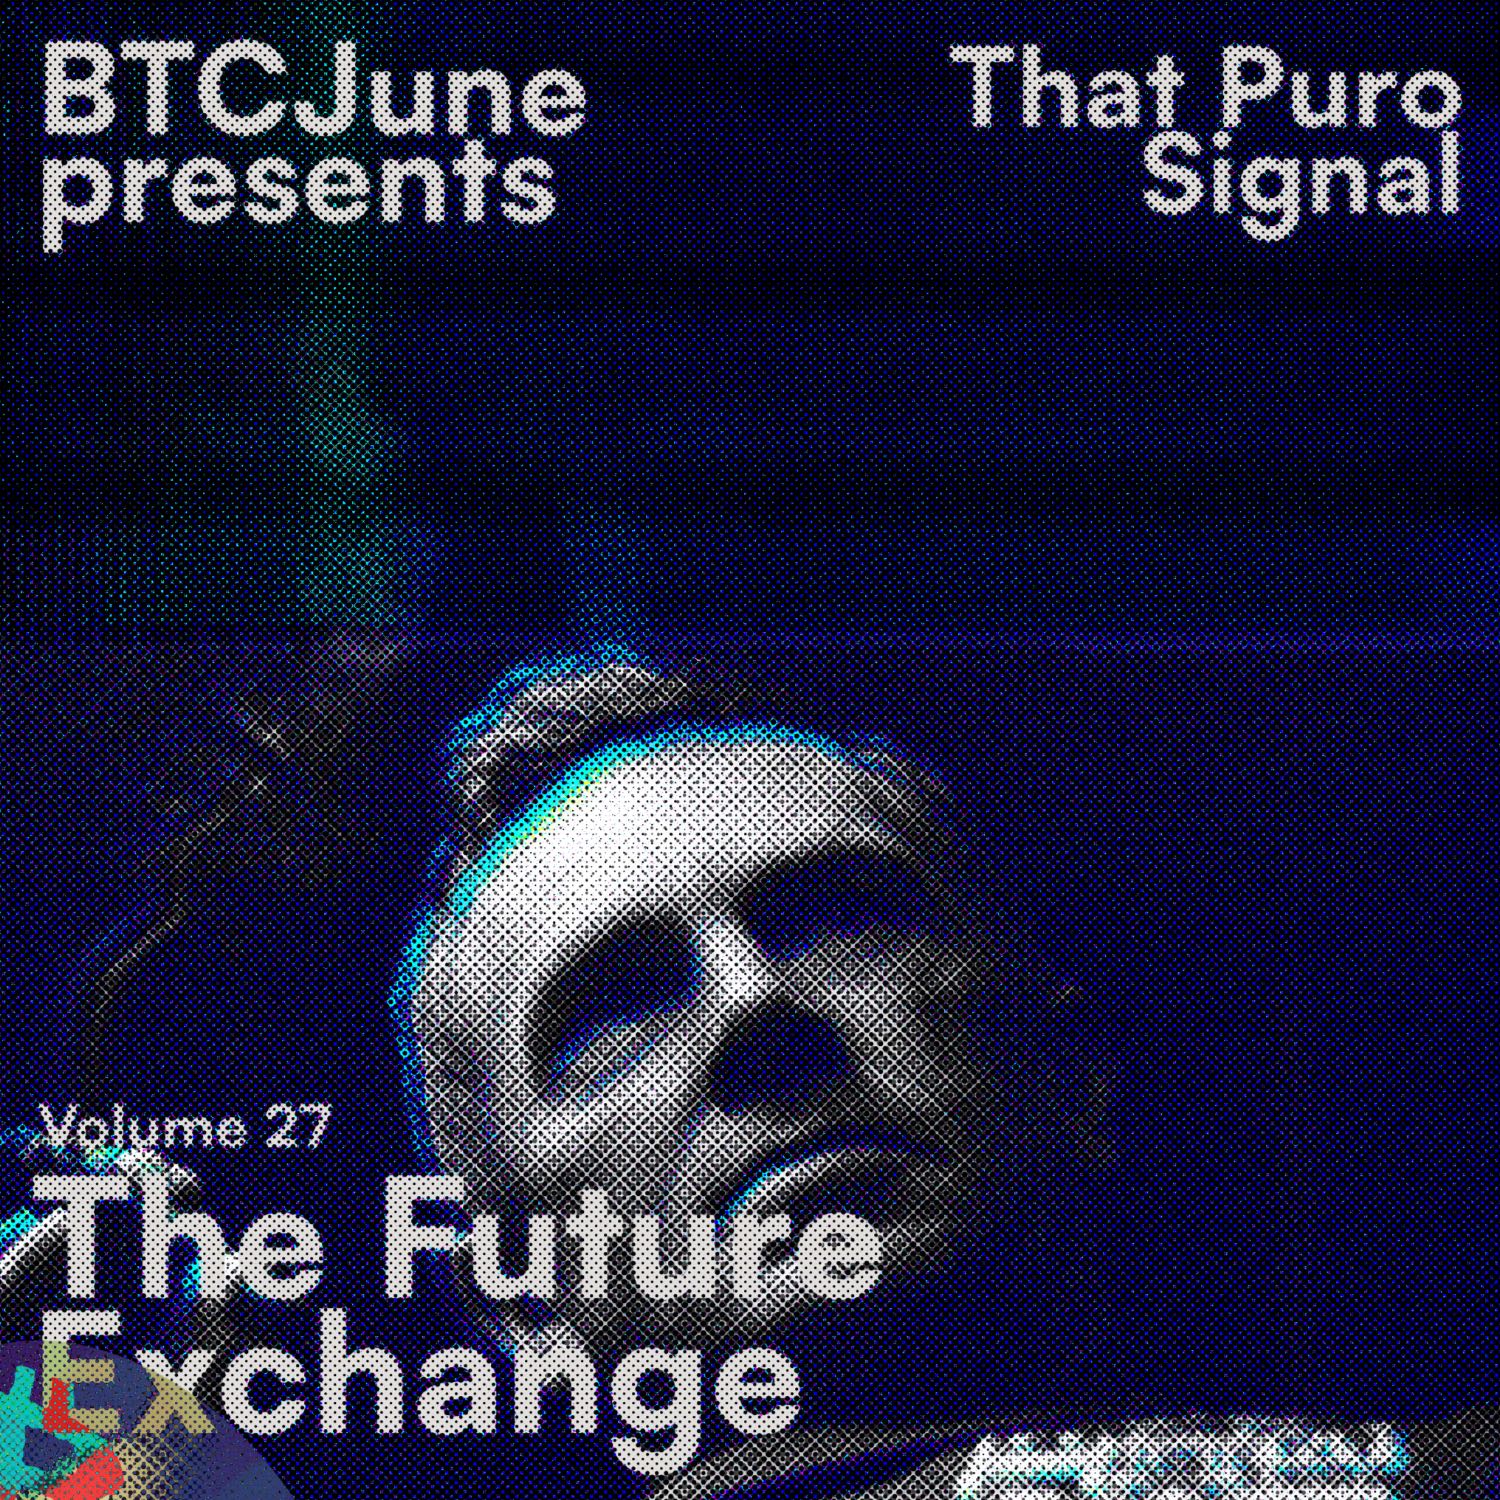 Volume 27 - The Future Exchange